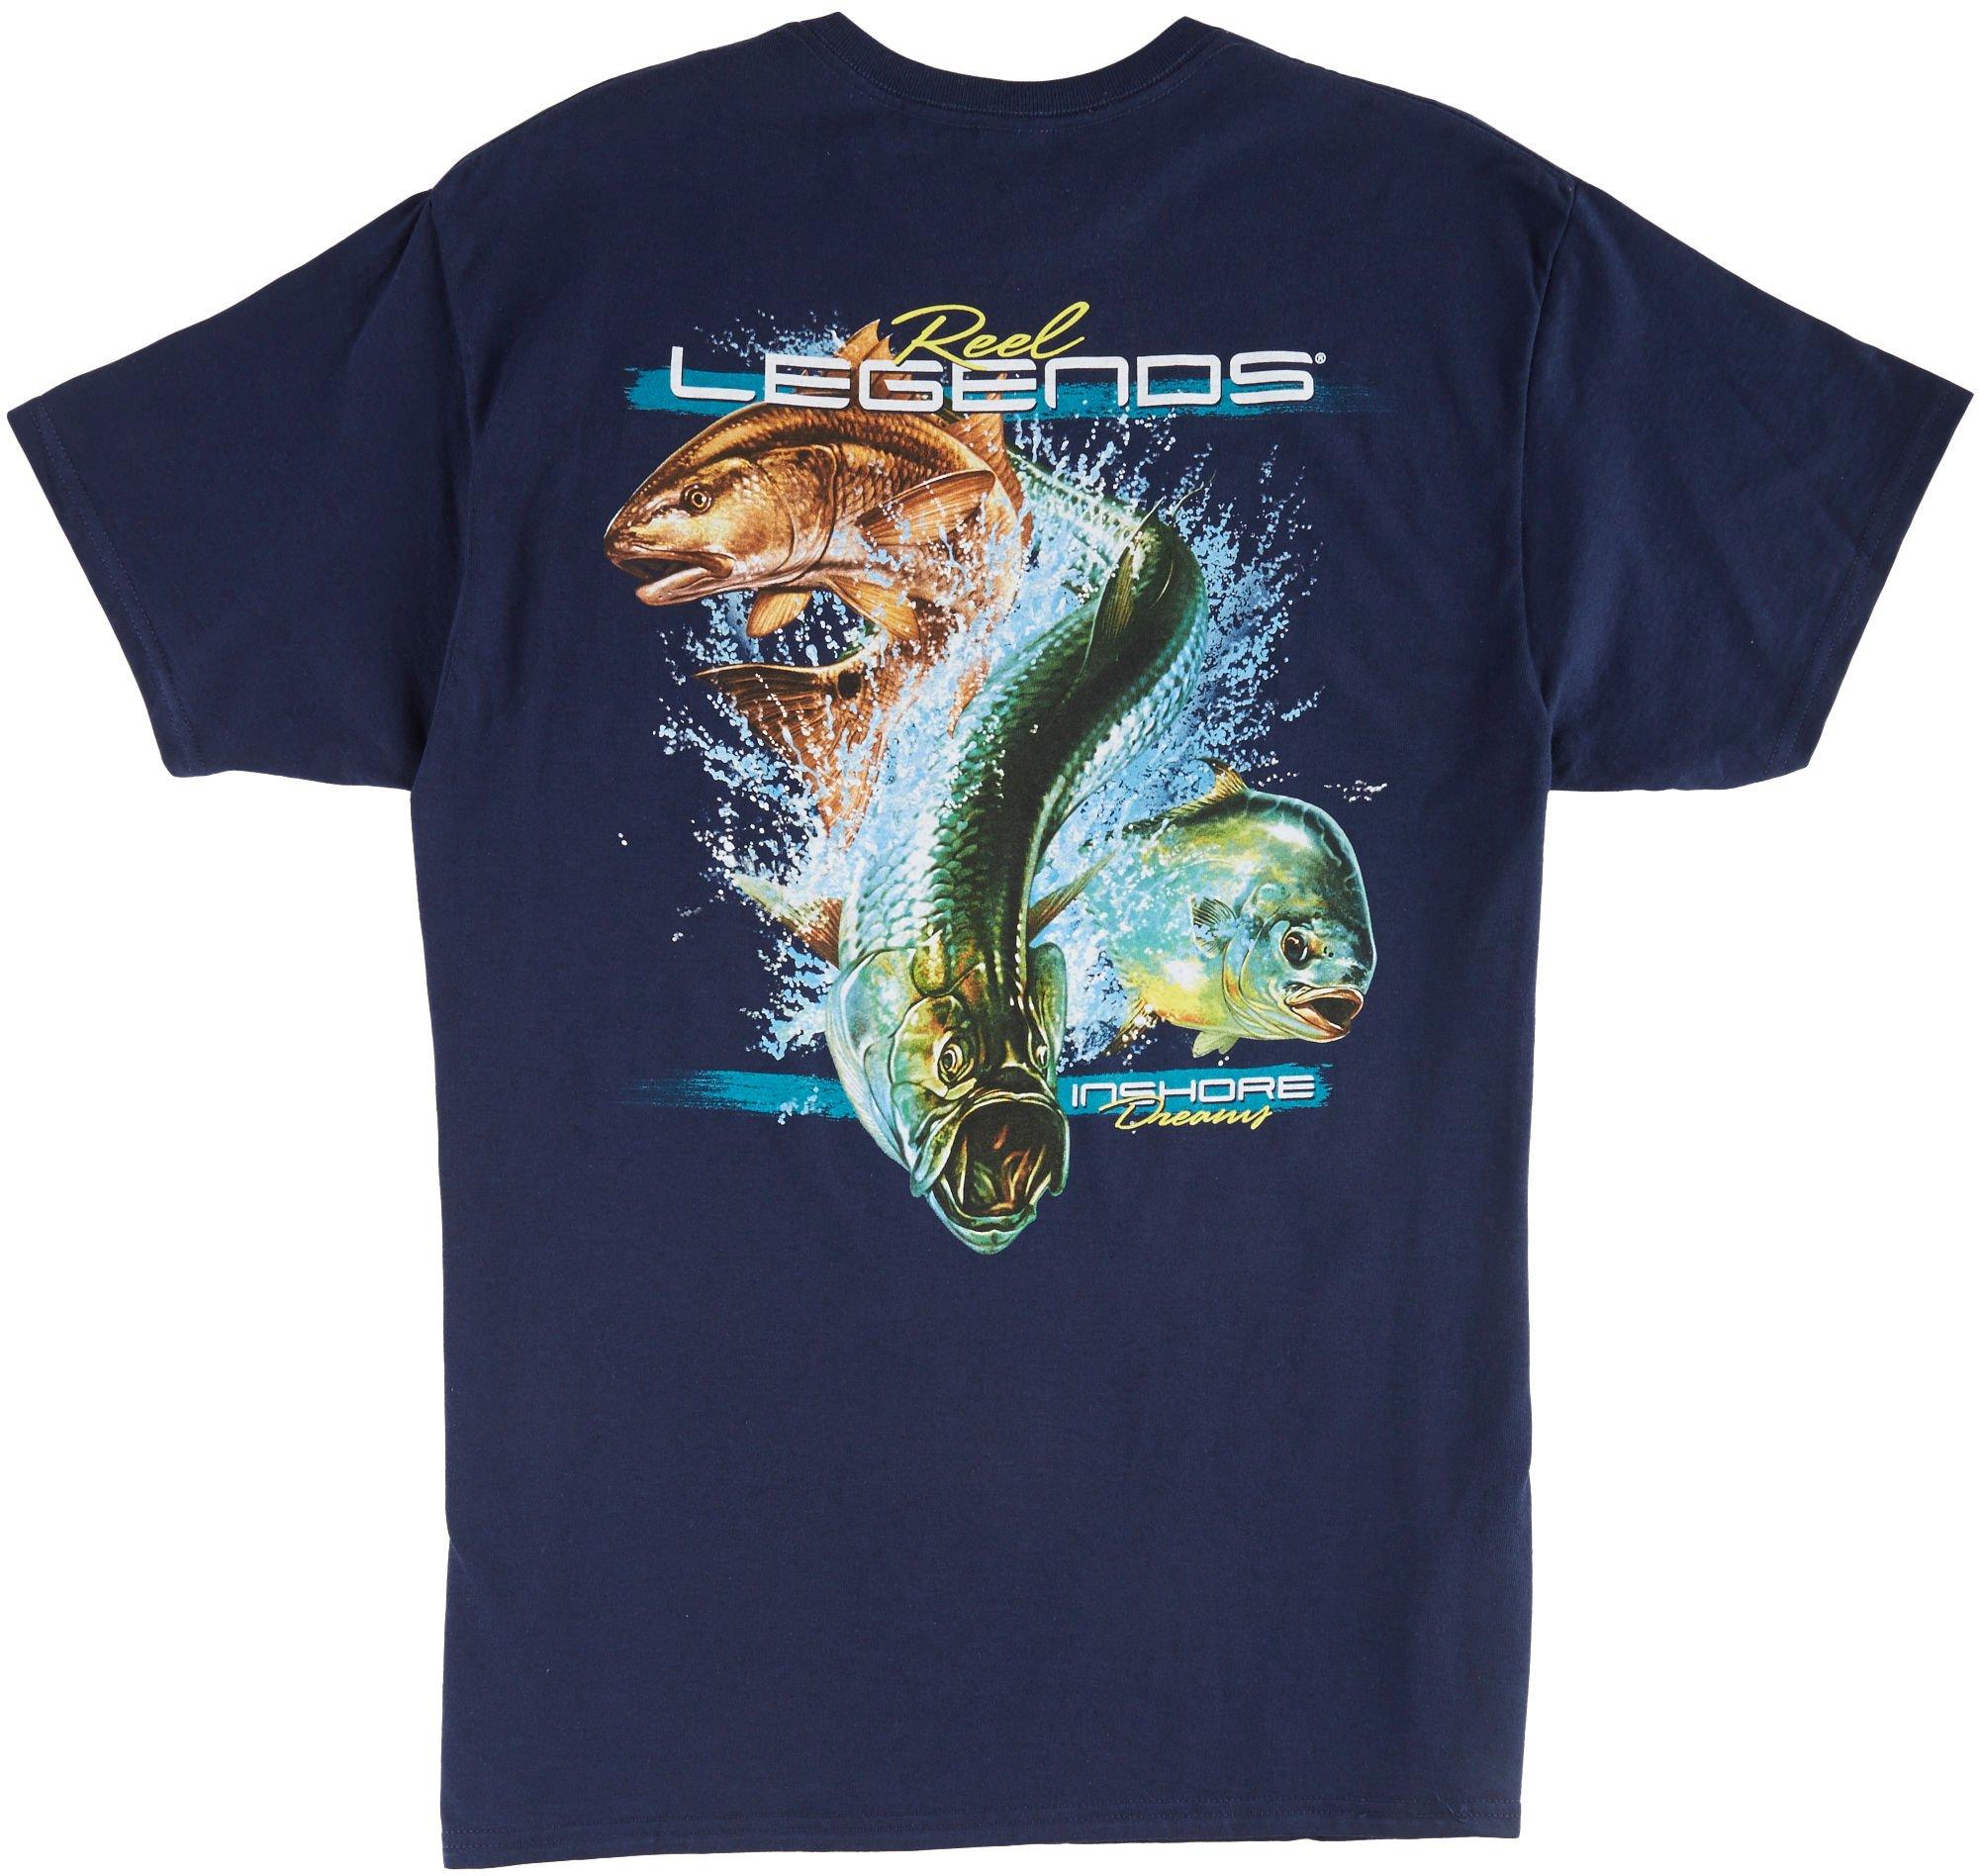 Reel Legends Mens Inshore Dreams T-Shirt